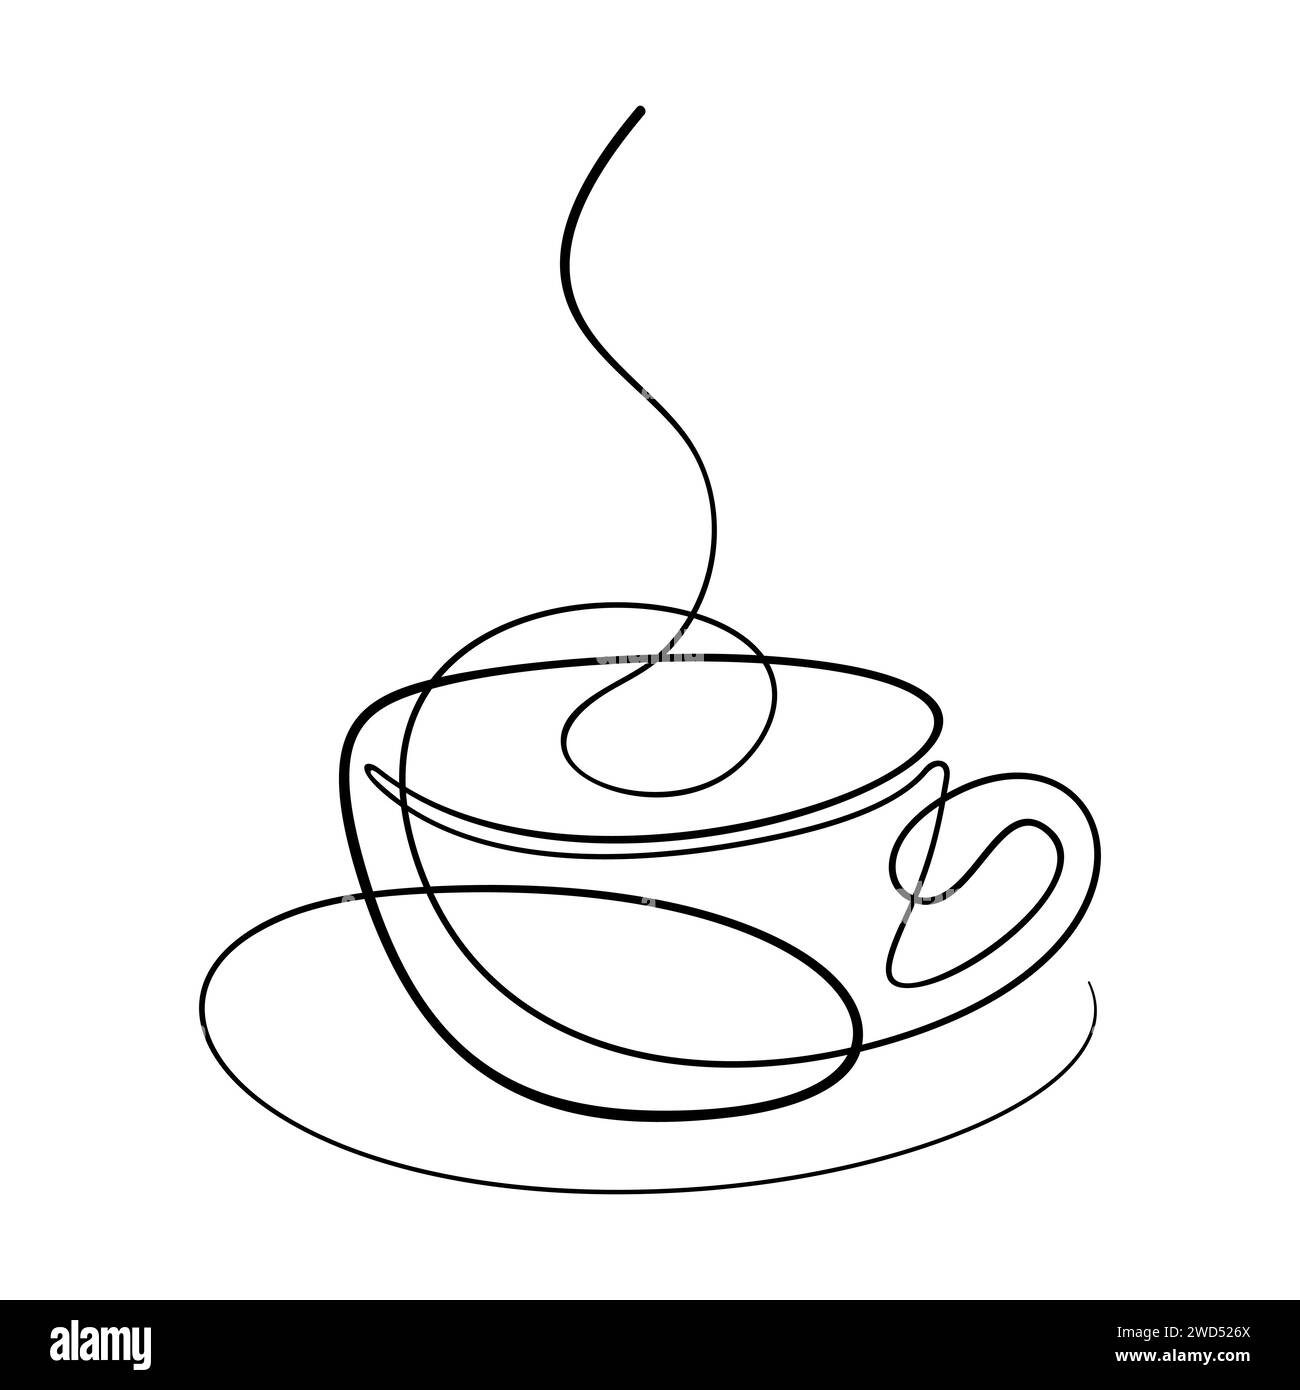 Tazza di caffè su piattino disegno continuo a una linea isolato, bevanda calda con vapore Vector illustrazione lineare minimalista realizzata con linea singola sottile arrotondata Illustrazione Vettoriale